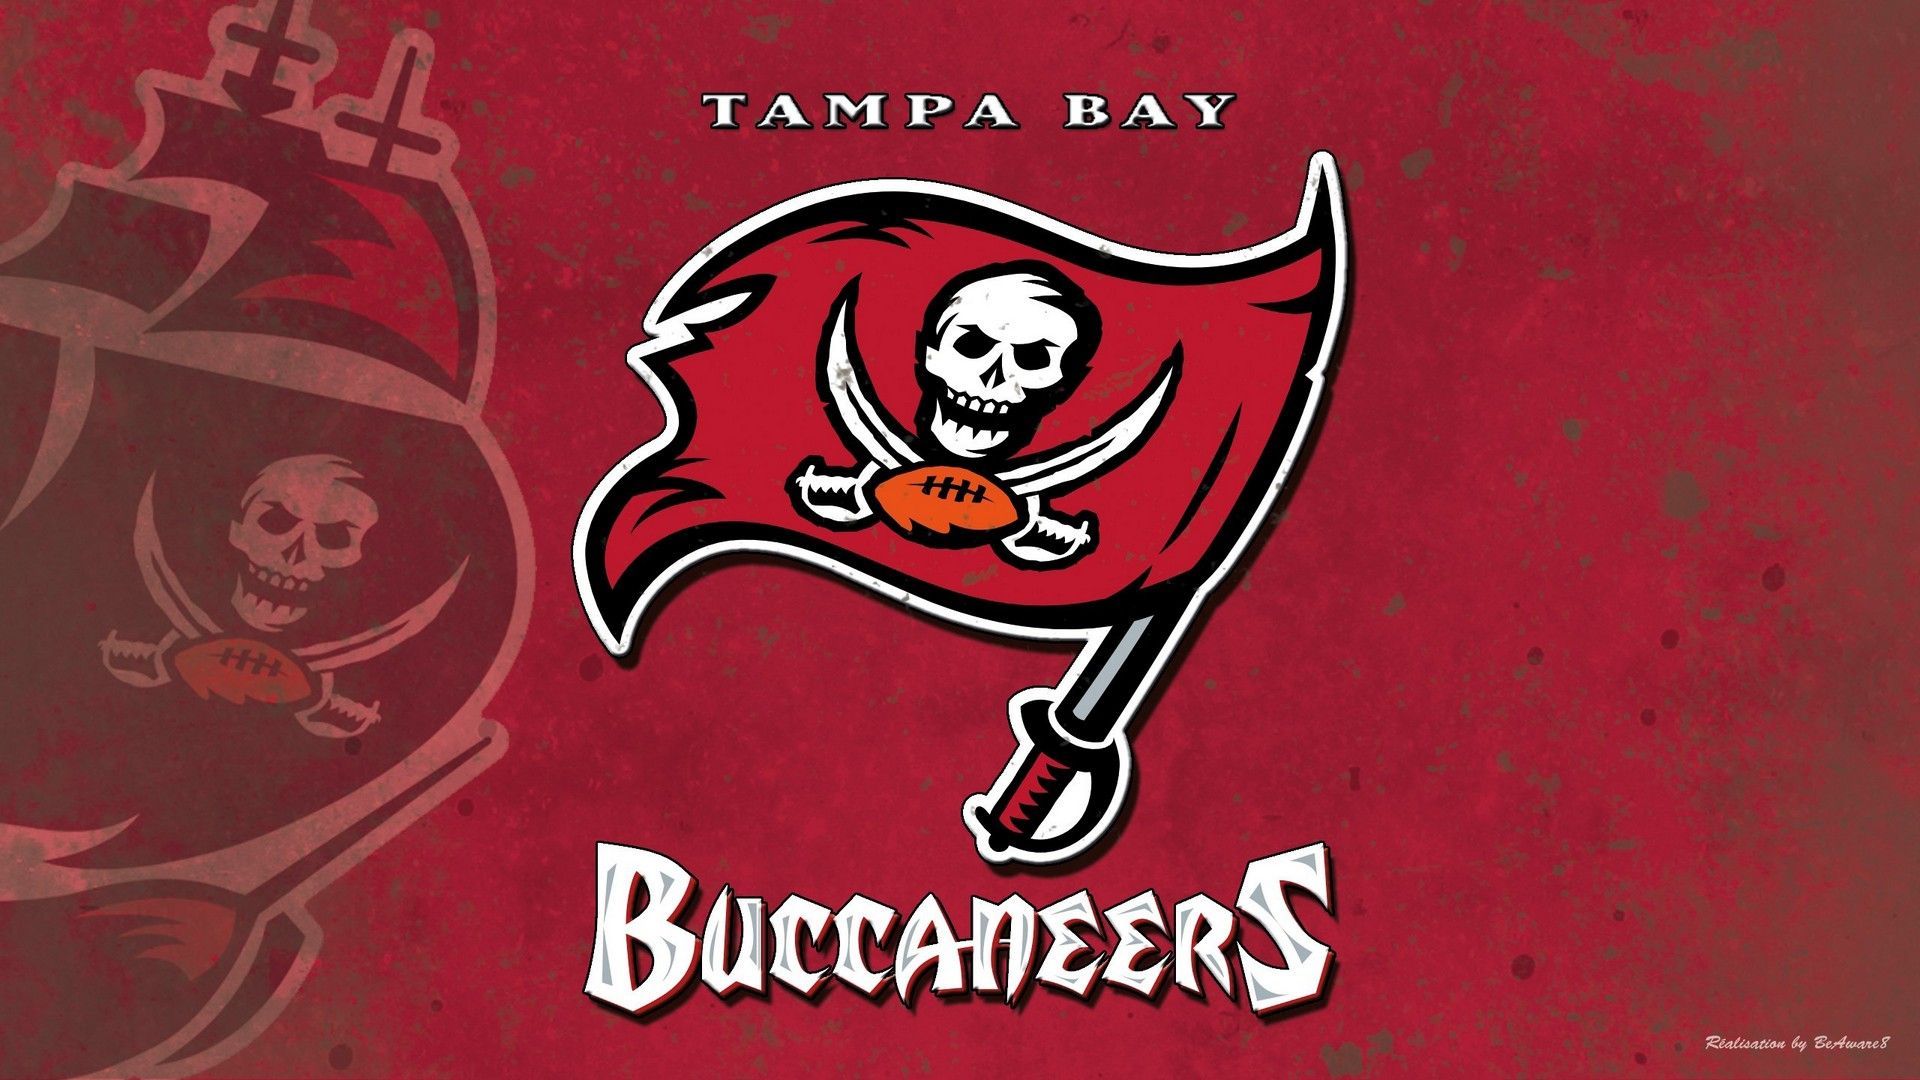 HD Tampa Bay Buccaneers Background NFL Football Wallpaper. Tampa bay buccaneers, Nfl football wallpaper, Buccaneers